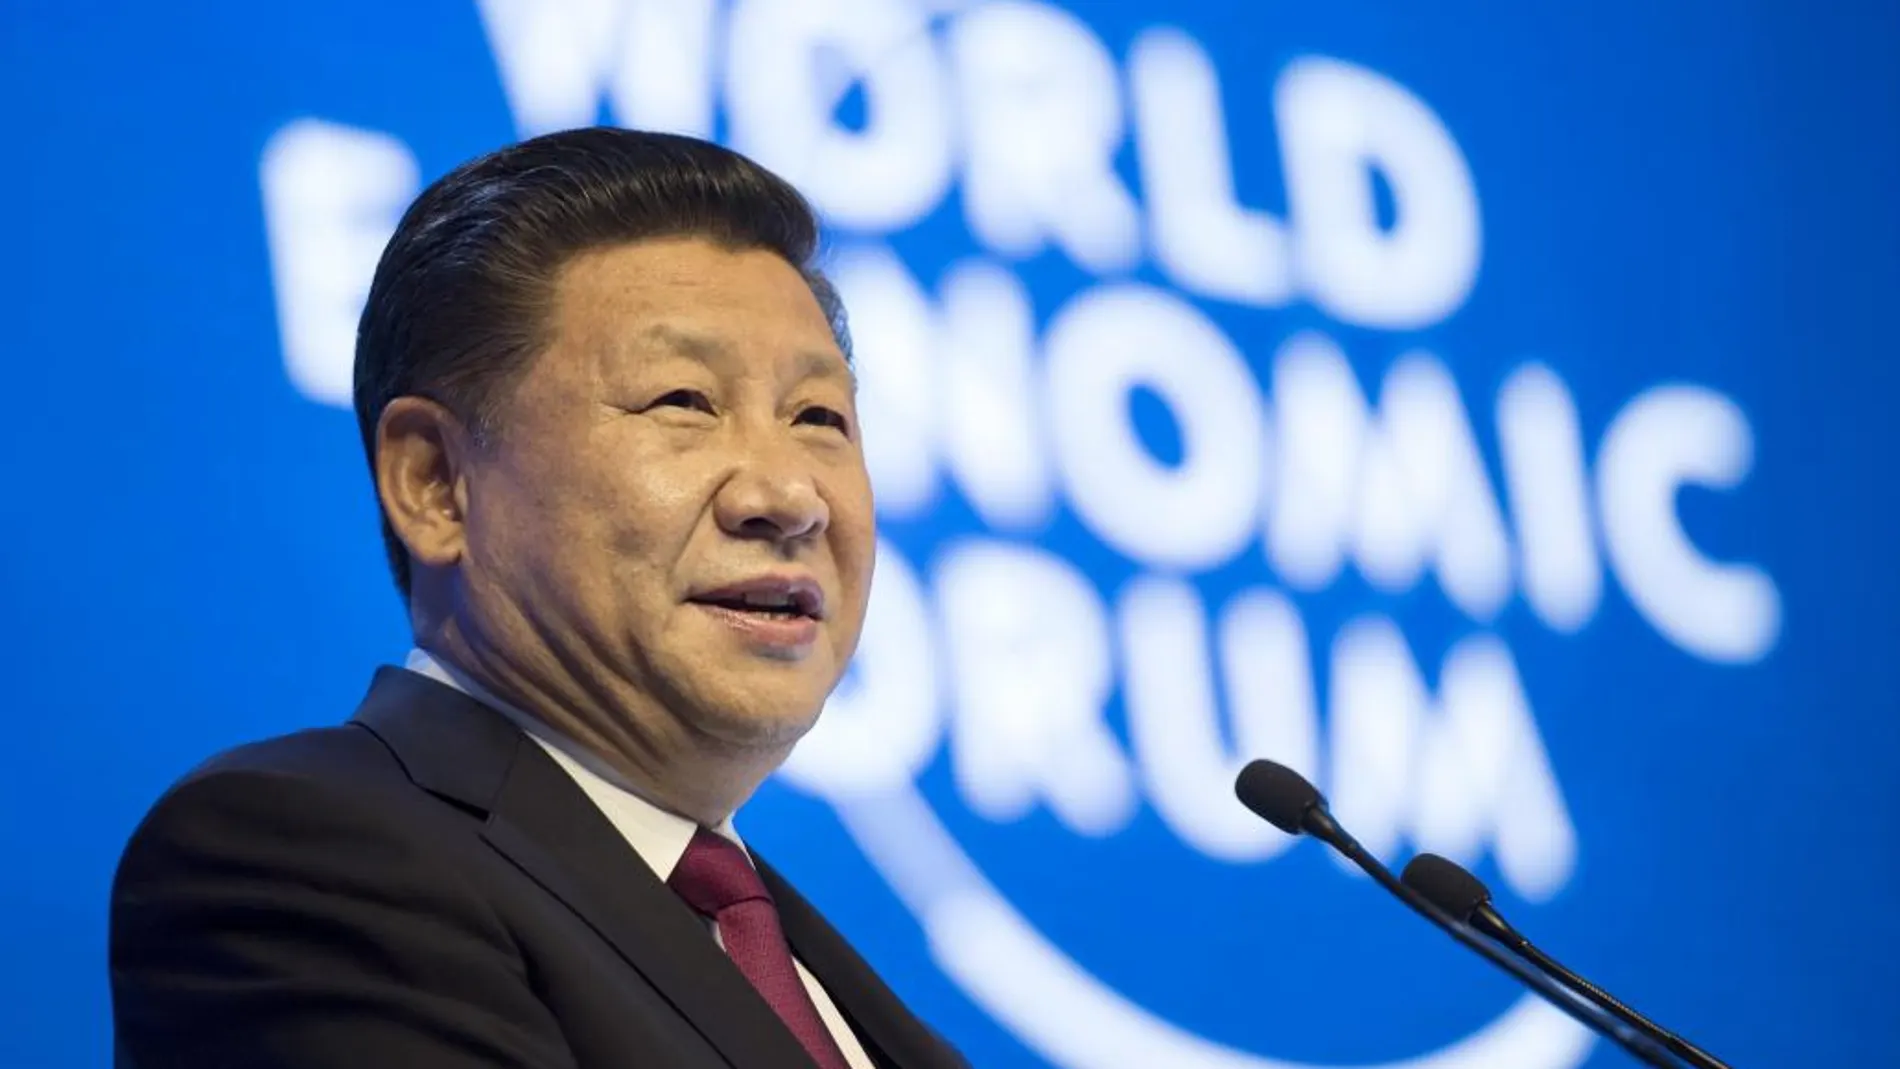 El presidente chino, Xi Jinping, da un discurso durante la primera jornada de la 47 edición del Foro Económico Mundial de Davos (Suiza).